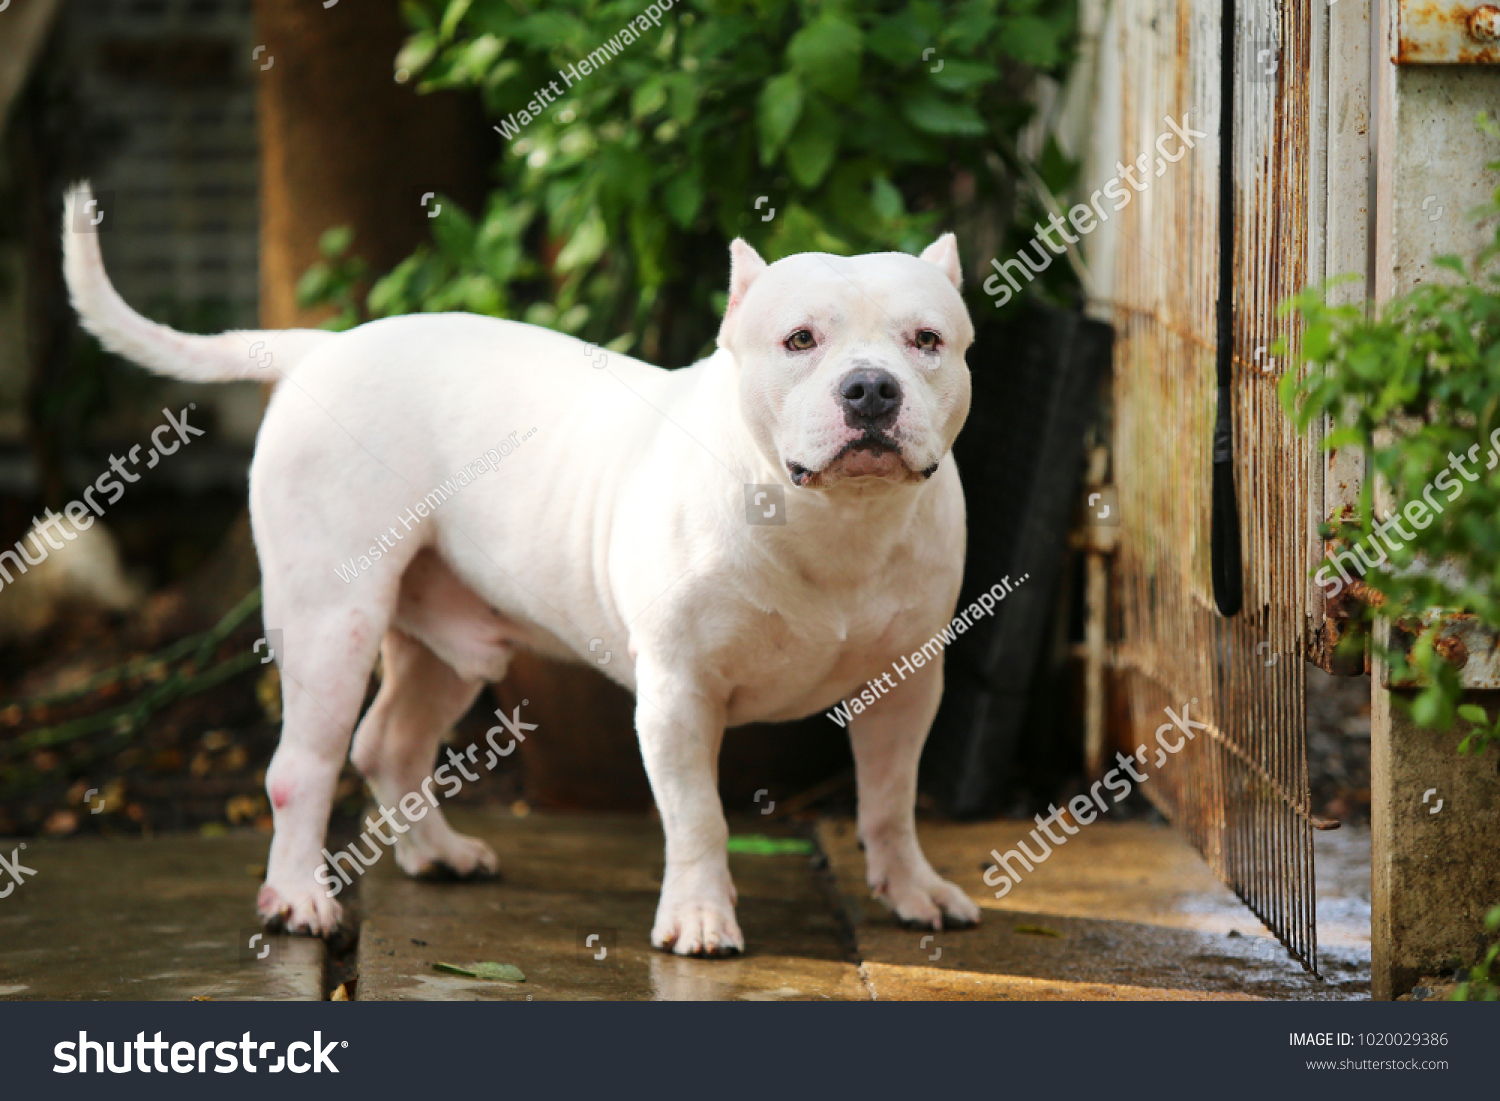 bully white dog